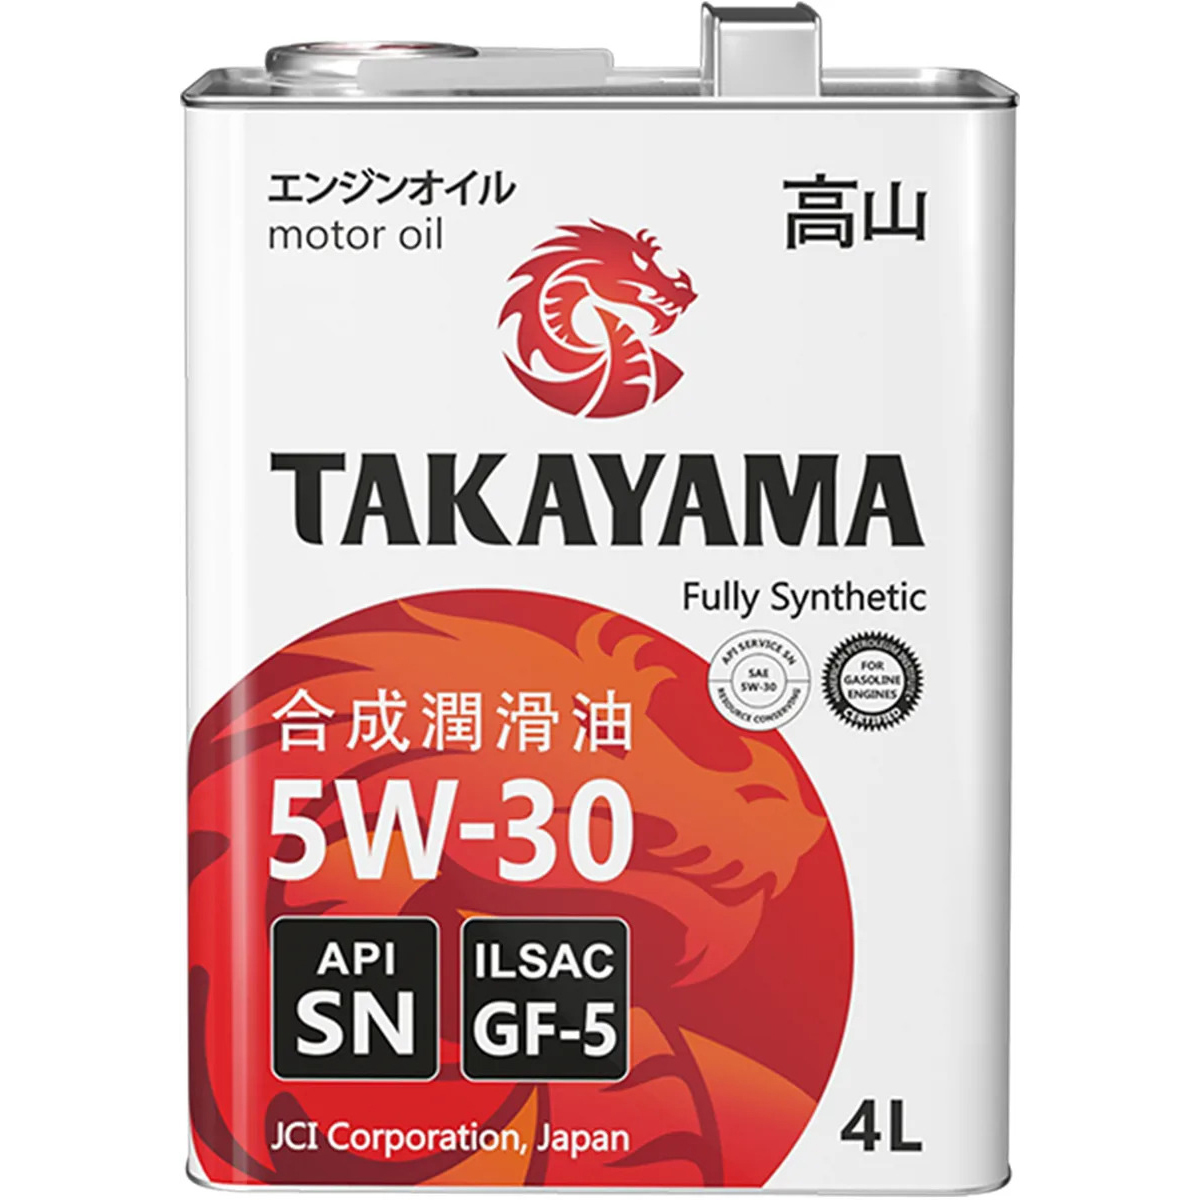 Токояма масло 5w30. Takayama 5w30 SN gf-5. Такаяма 5w30 ILSAC 4л 605043. Takayama SAE 5w-30, ILSAC gf-5, API SN (бочка 200л). Моторное масло Takayama 5w-40 синтетическое 4 л.